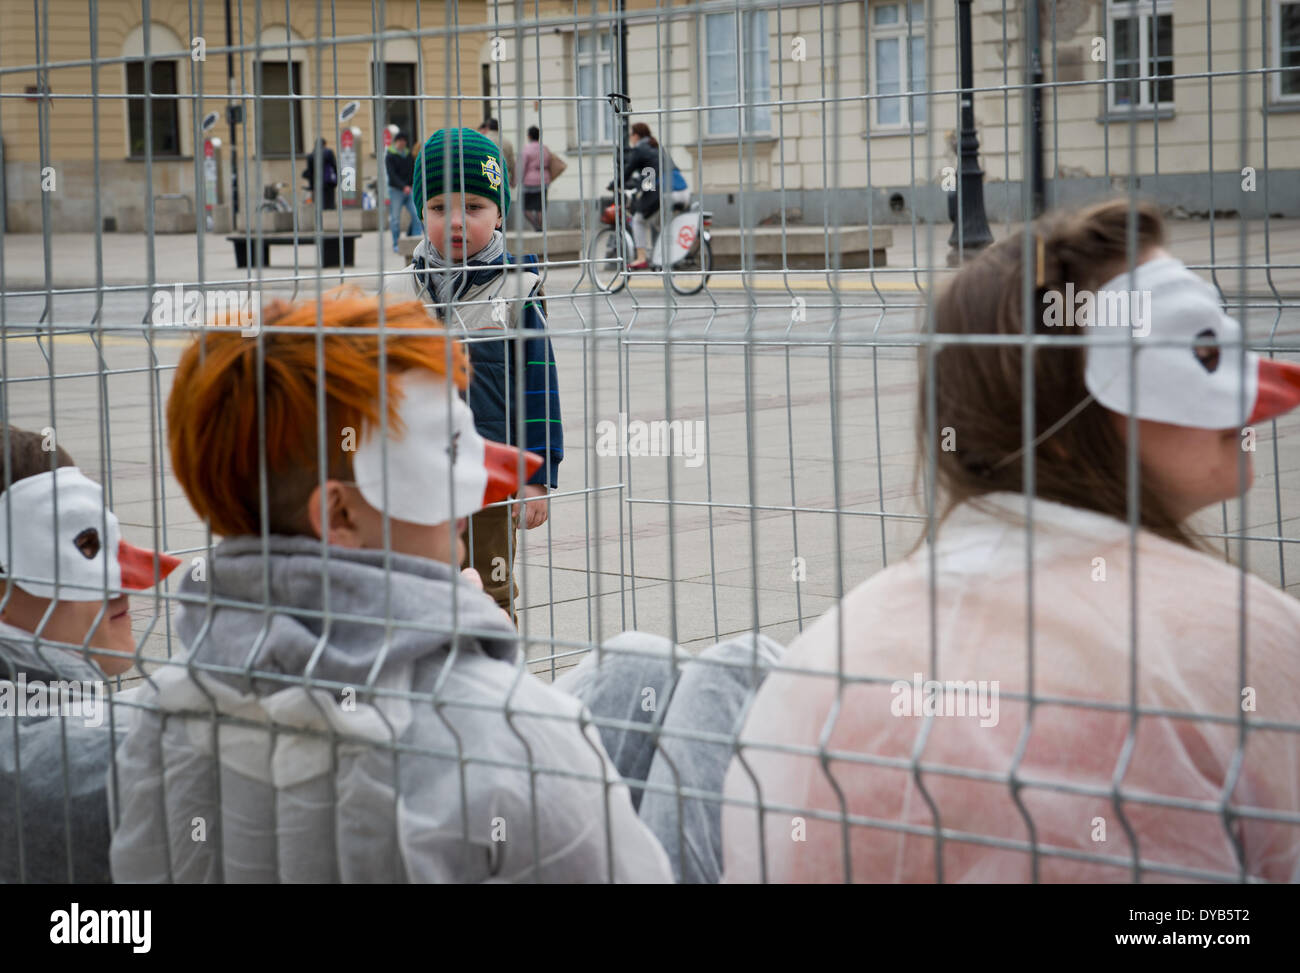 Varsovie, Pologne. 12 avr, 2014. Des militants de "cages ouvertes" organisation des manifestations contre l'élevage de volaille les cages en batterie le 12 avril à Varsovie. Quatre personnes ont été enfermés dans la cage pendant 24 heures. Banque D'Images